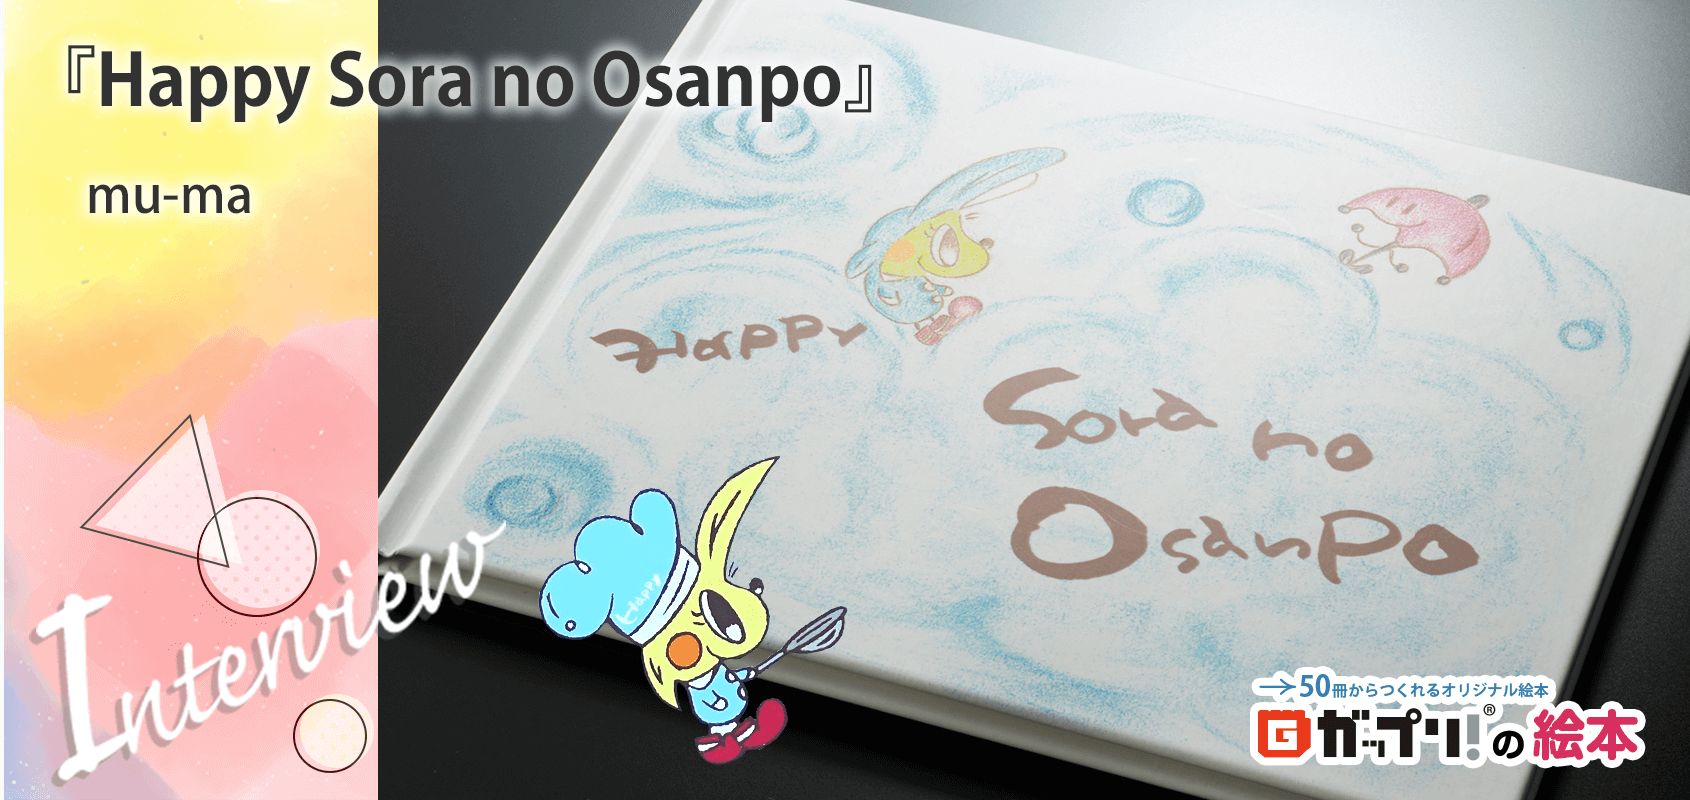 『Happy Sora no Osanpo』mu-ma